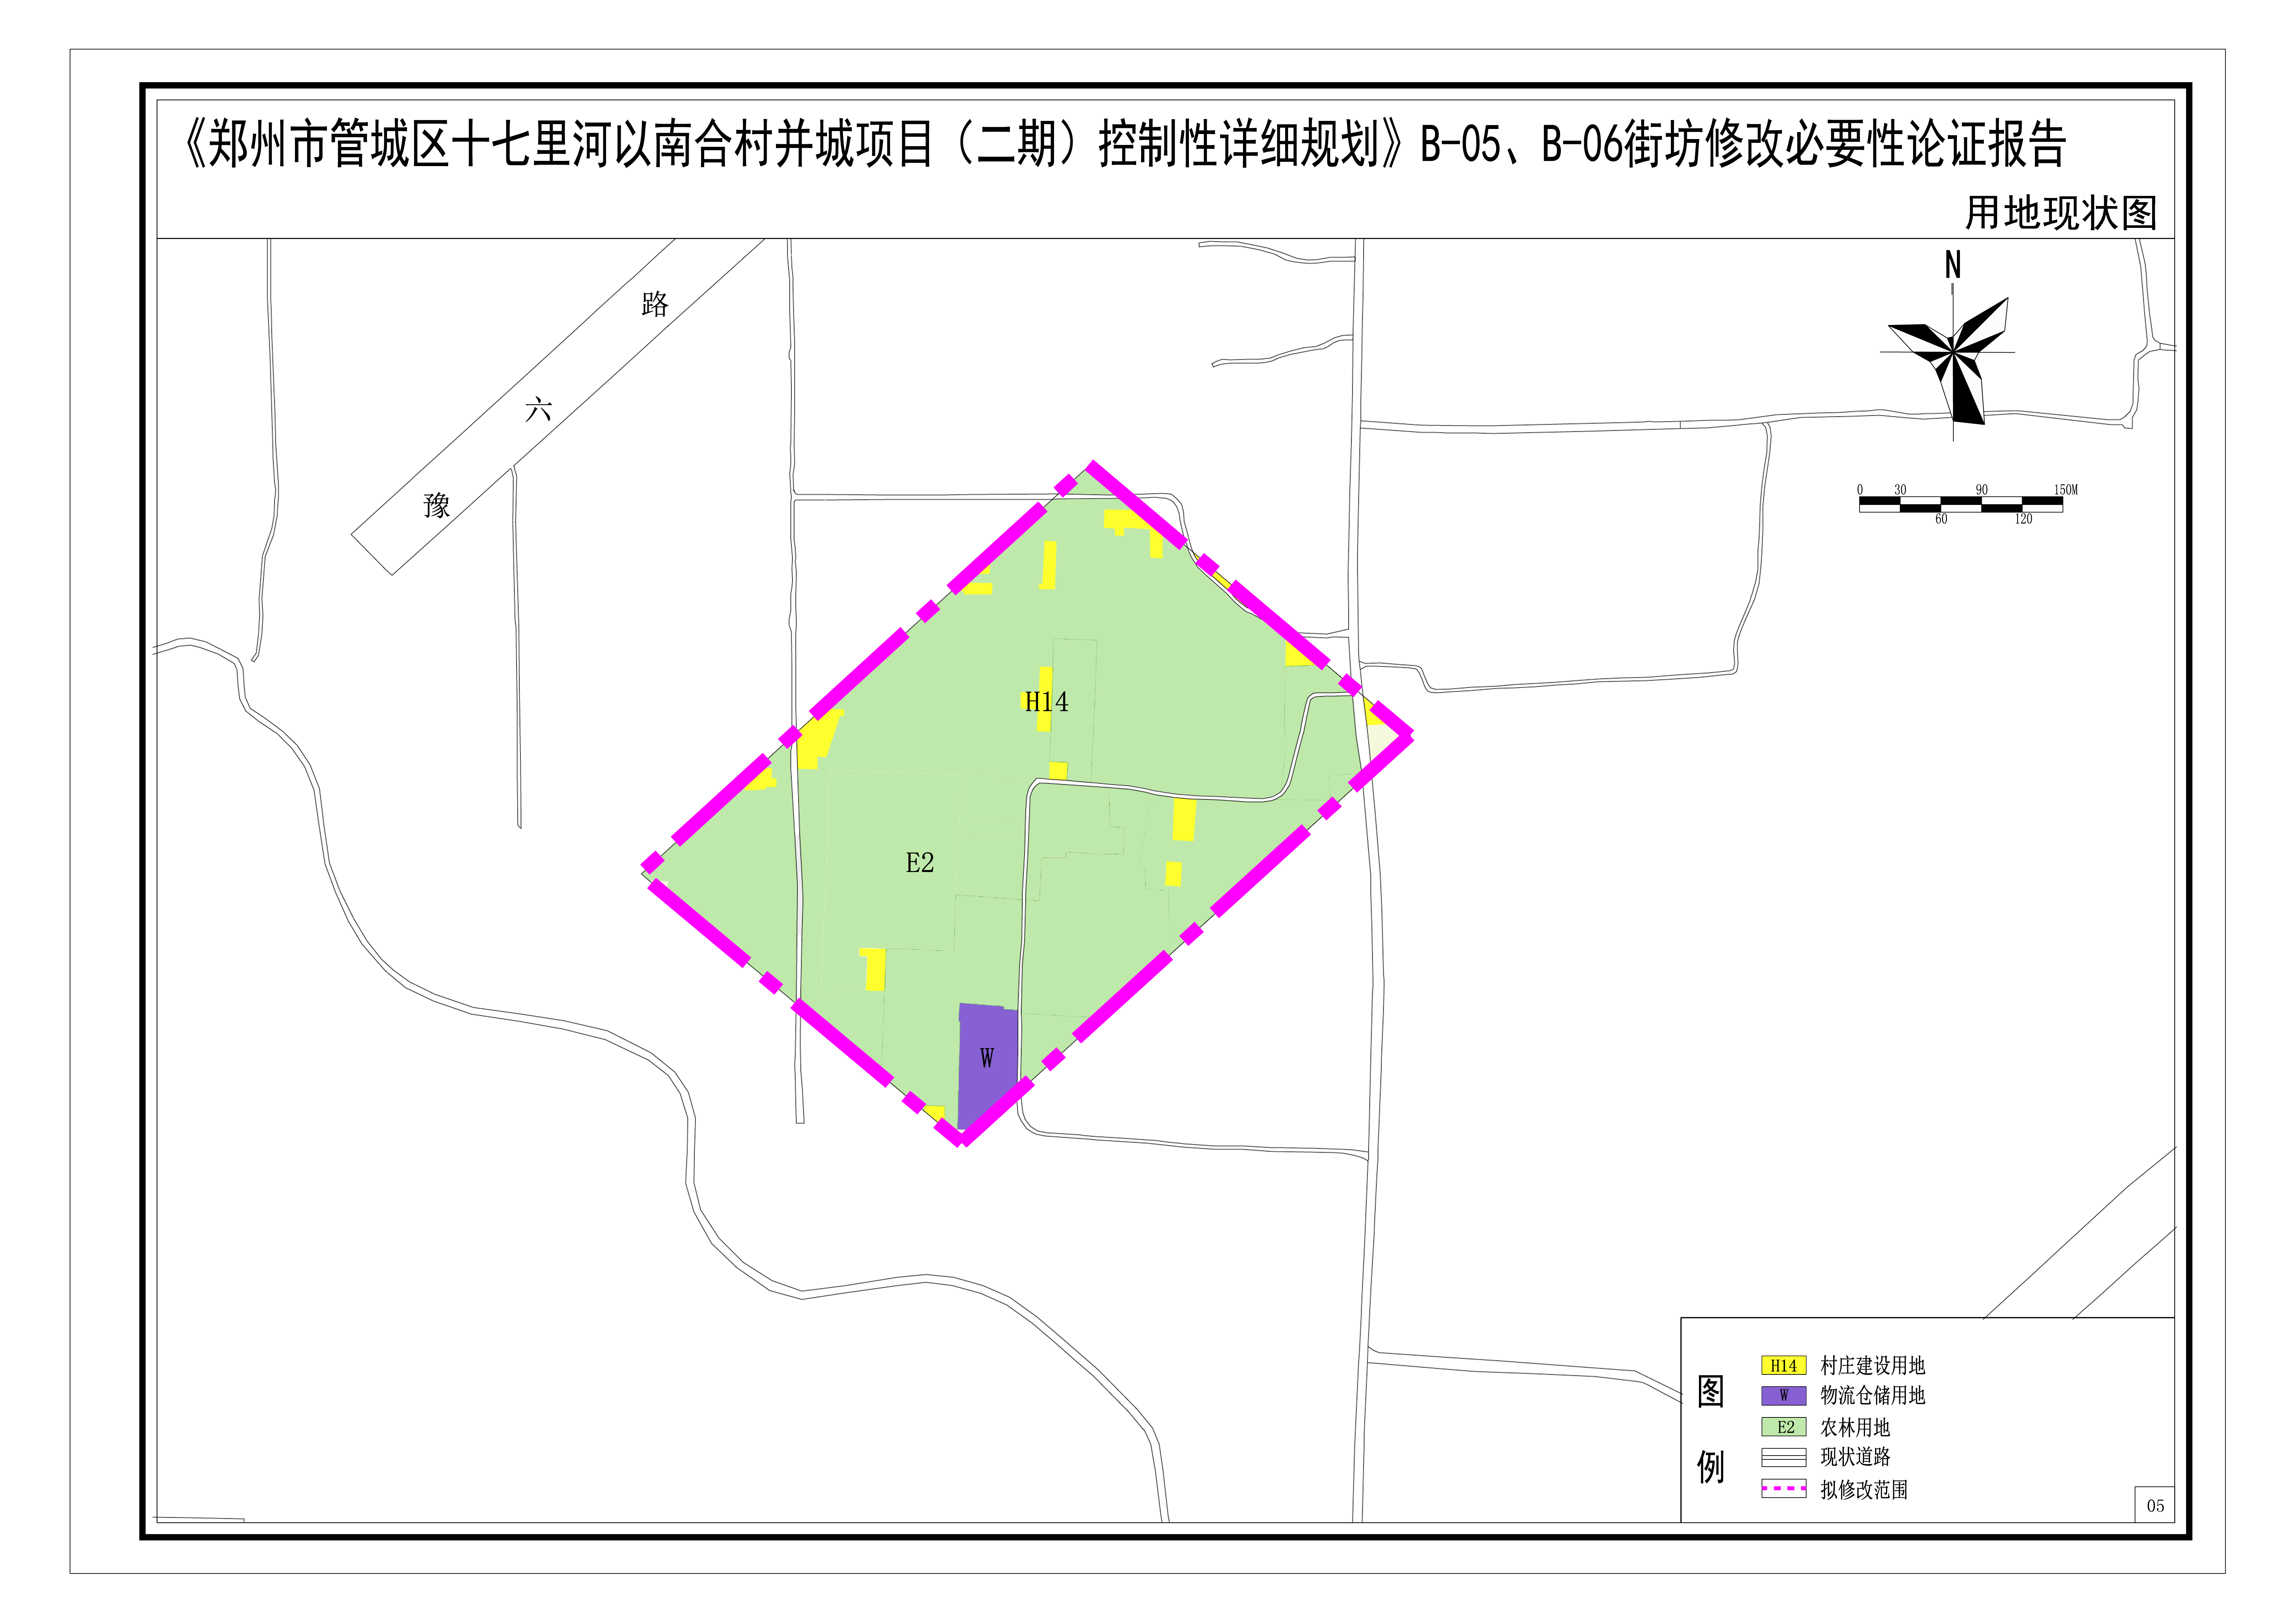 《郑州市管城区十七里河以南合村并城项目（二期）控制性详细规划》B-05、B-06街坊修改论证报告